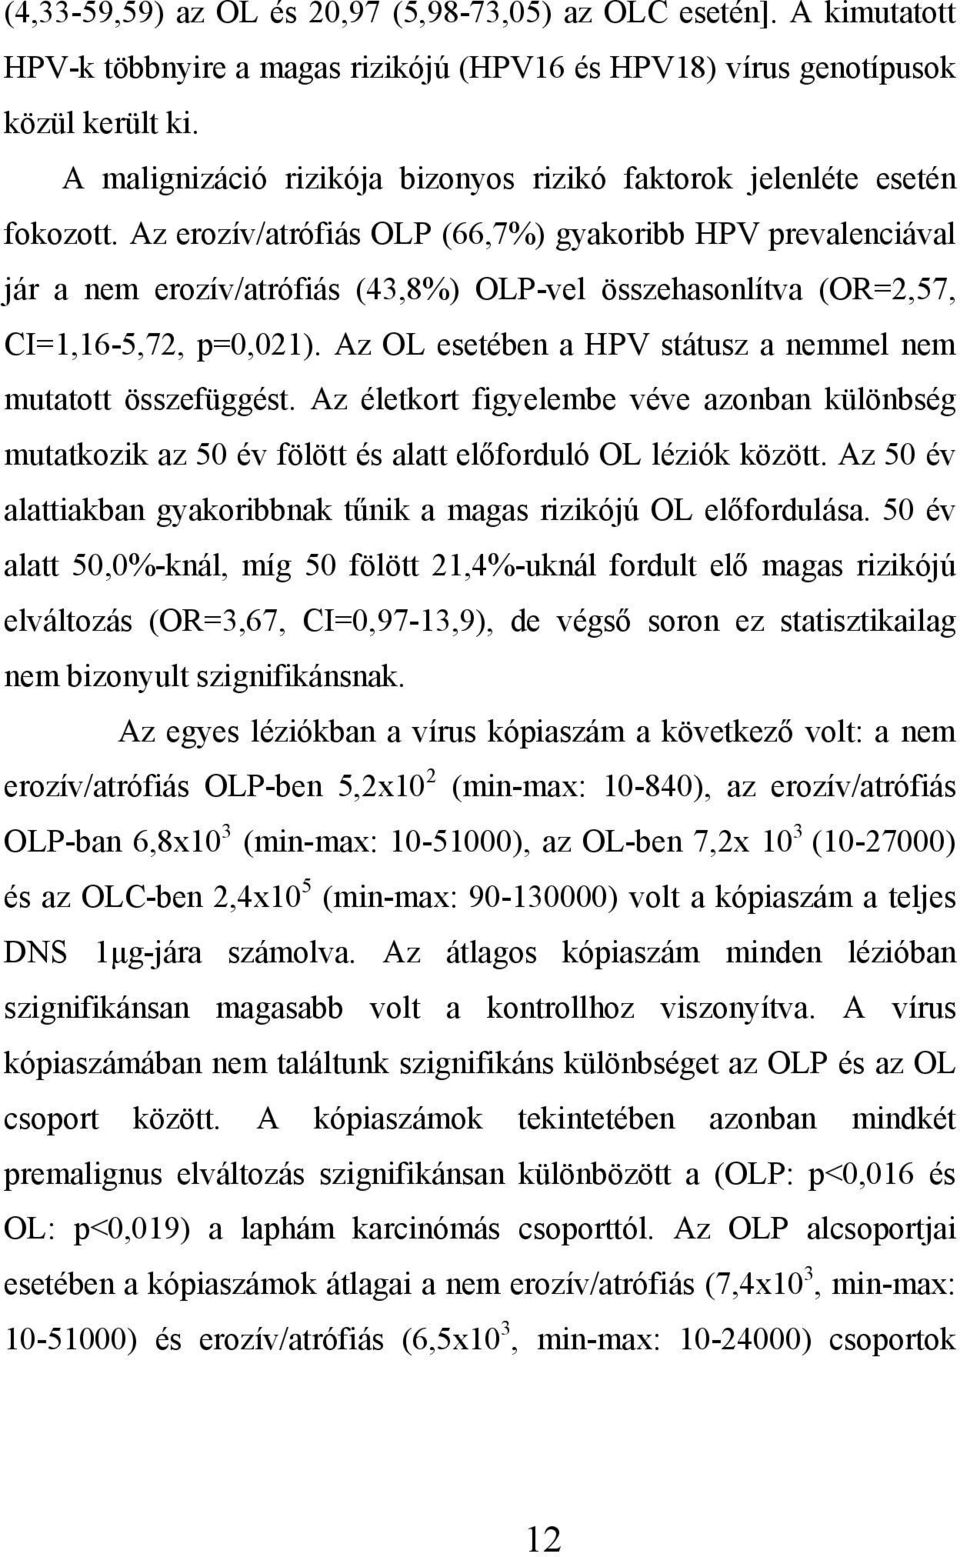 Az erozív/atrófiás OLP (66,7%) gyakoribb HPV prevalenciával jár a nem erozív/atrófiás (43,8%) OLP-vel összehasonlítva (OR=2,57, CI=1,16-5,72, p=0,021).